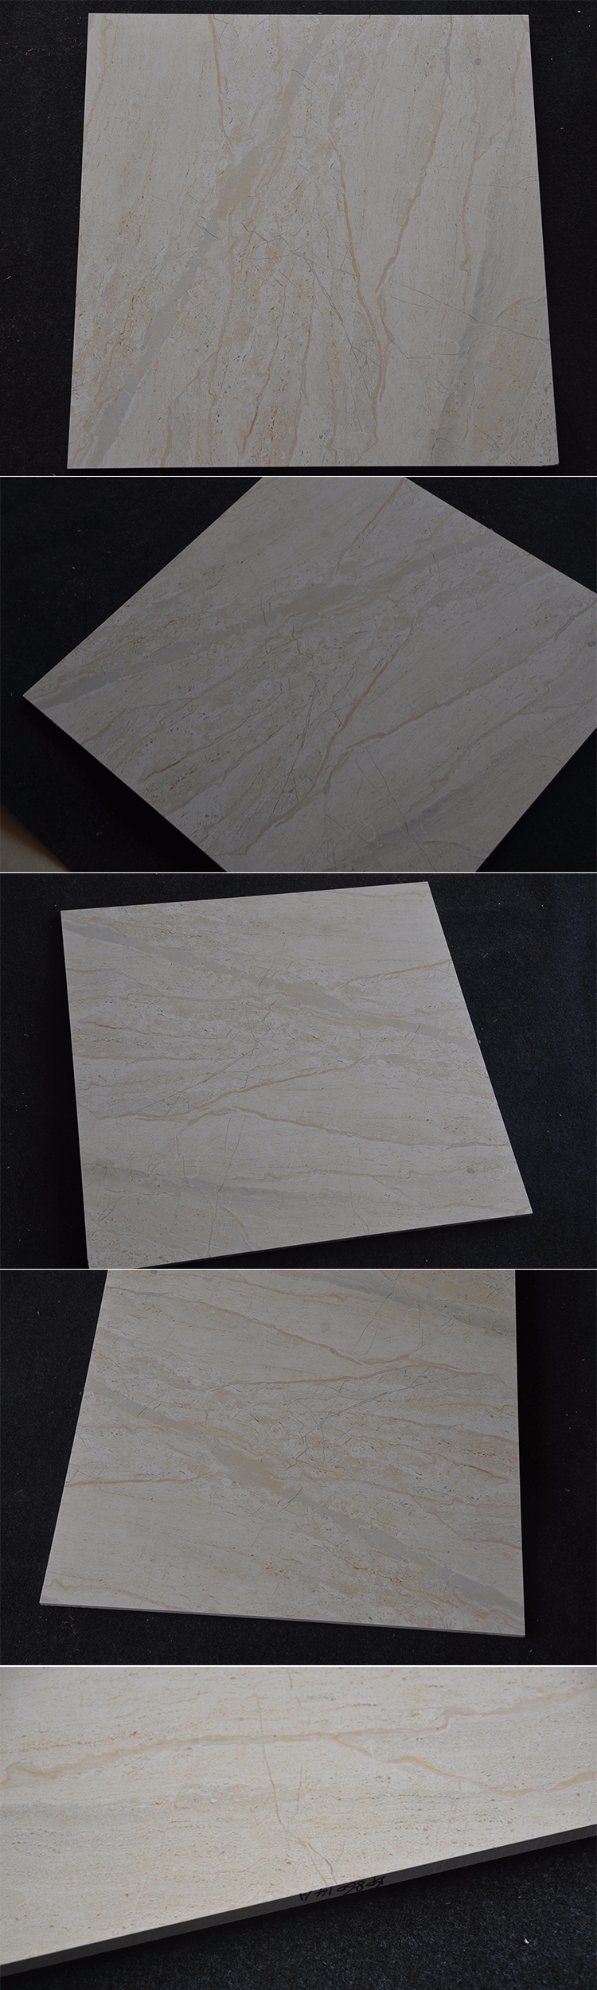 Low Price Ceramic Tiles Non-Slip Restaurant Floor Tile for Stairs